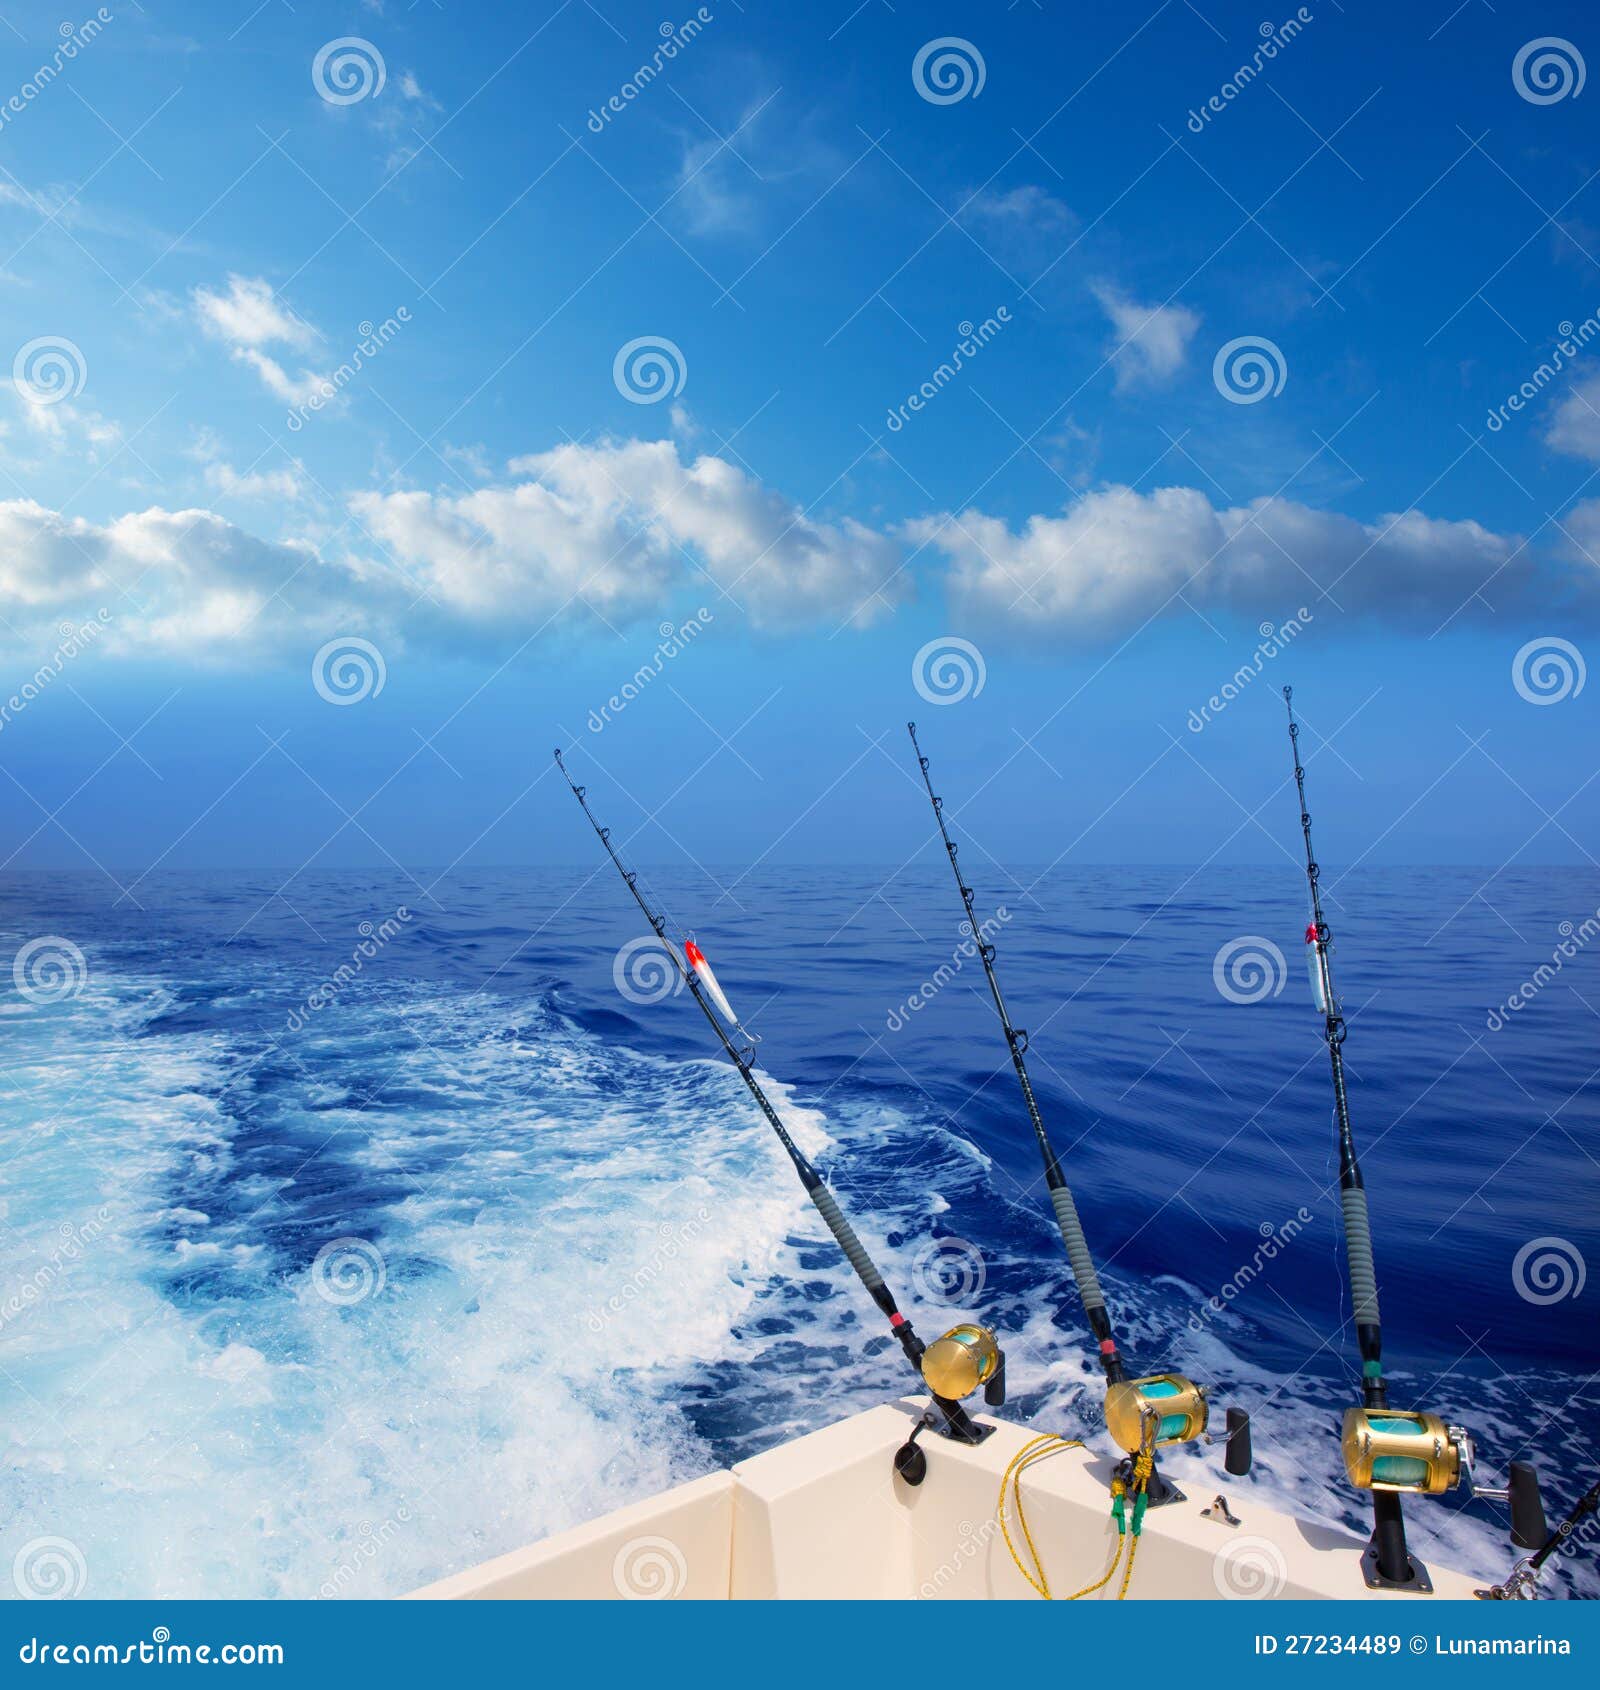 https://thumbs.dreamstime.com/z/boat-fishing-trolling-deep-blue-ocean-offshore-27234489.jpg